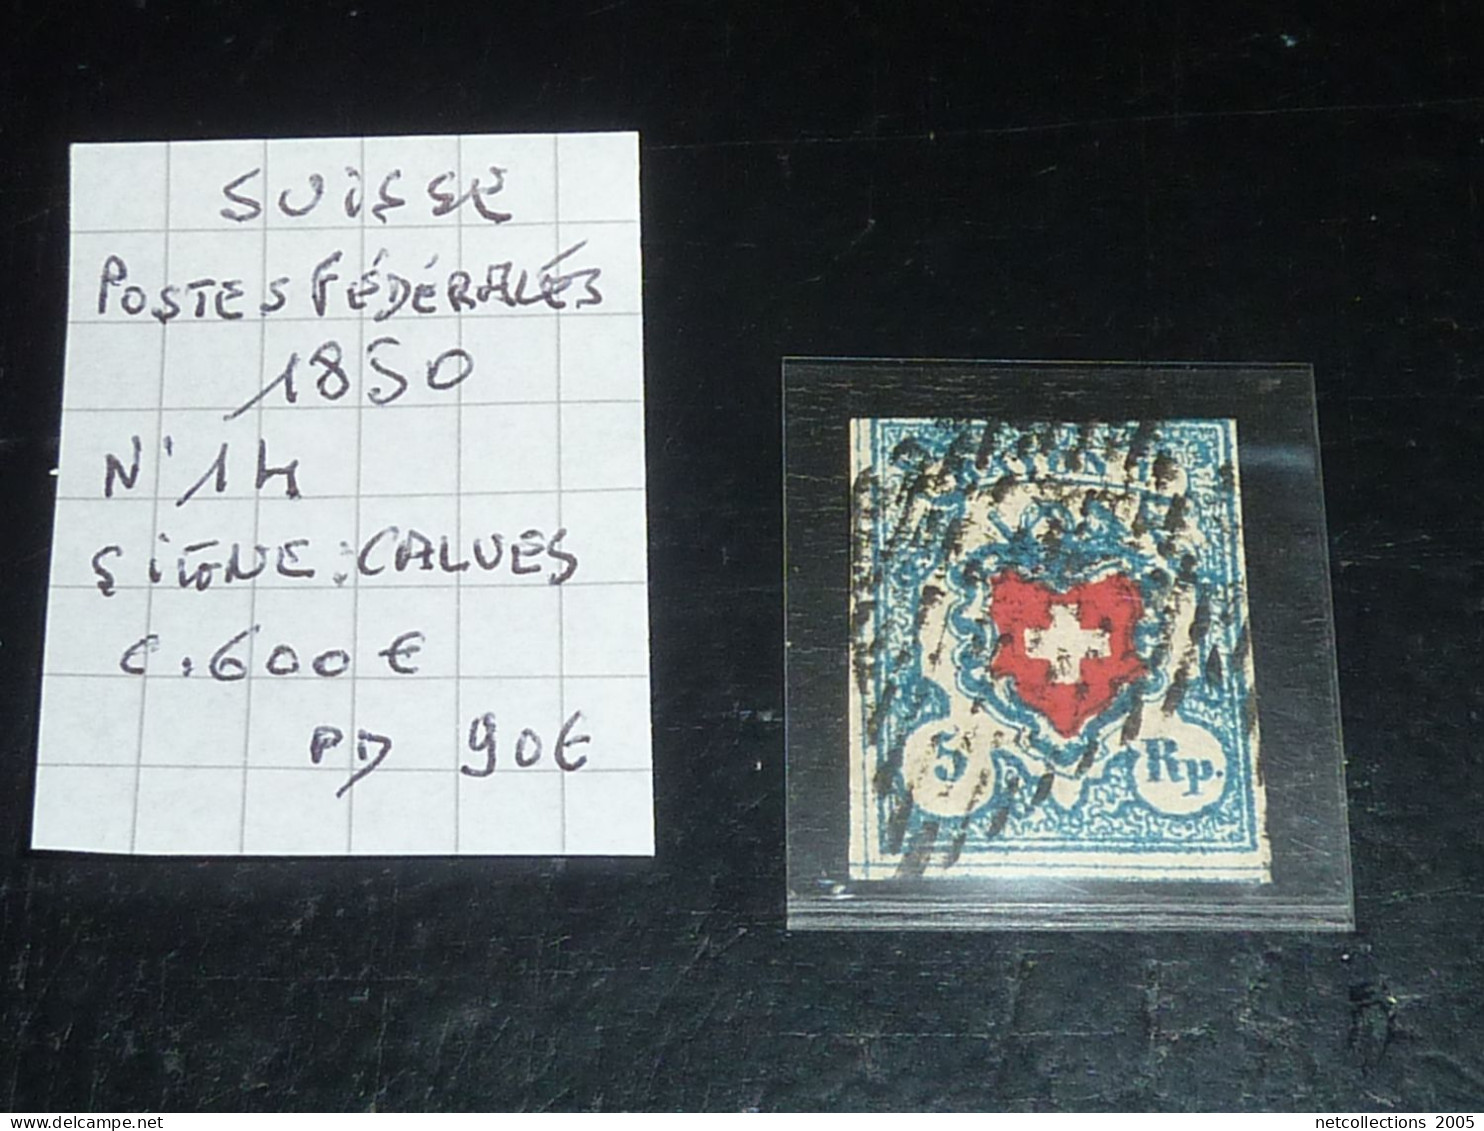 SUISSE POSTES FEDERALES 1850 N°14 - SIGNE CALVES - Oblitéré (CV) - 1843-1852 Federale & Kantonnale Postzegels